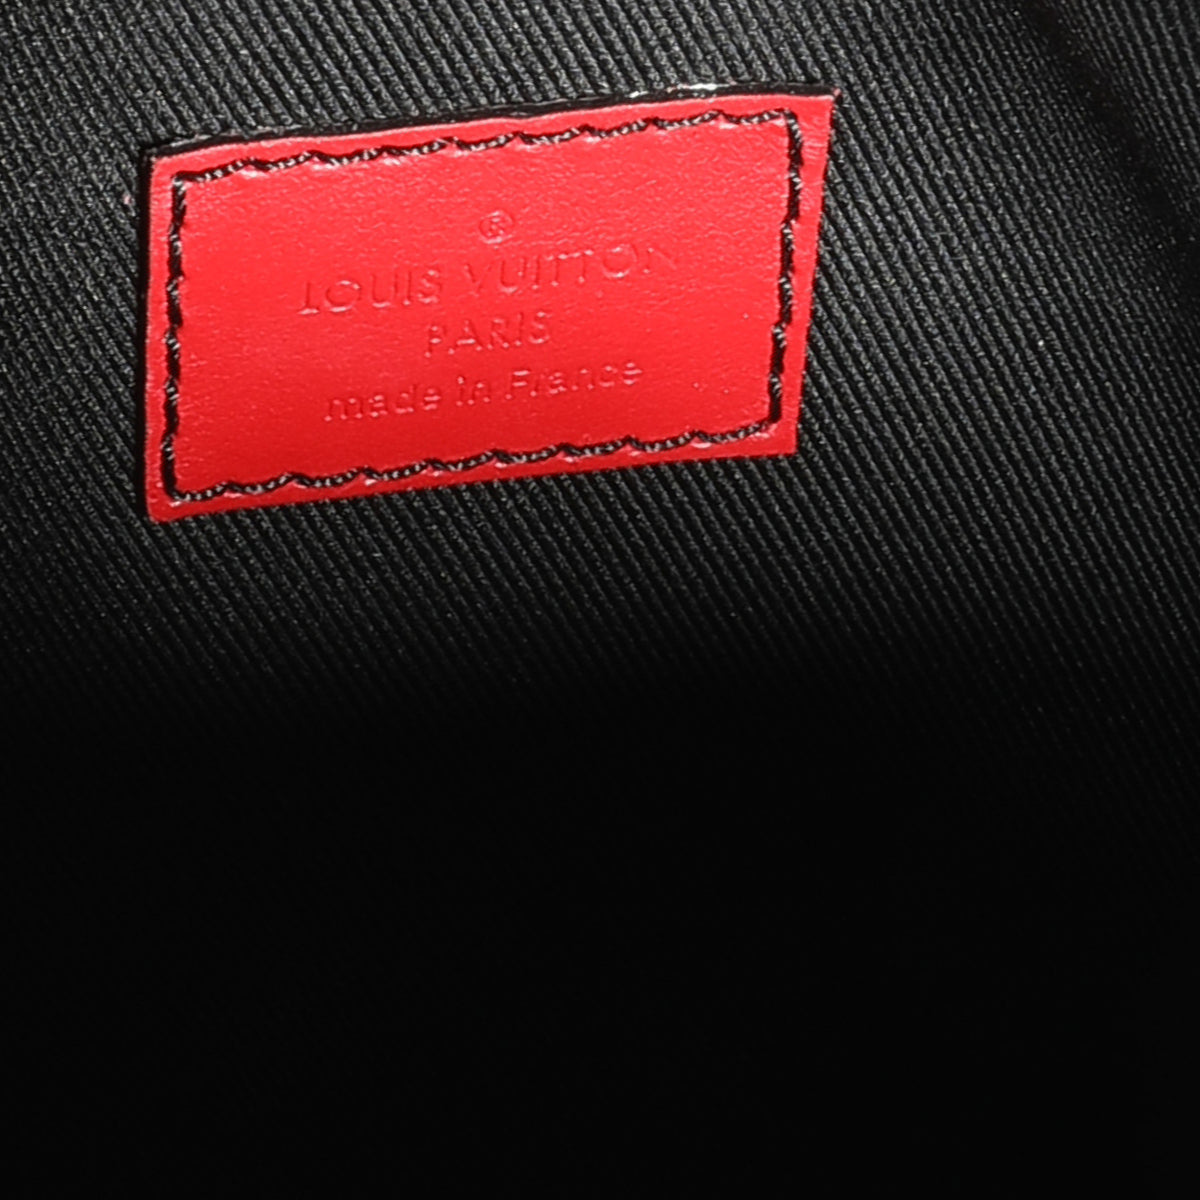 Louis Vuitton Geranium Leather Suhali Le Fabuleux, myGemma, NZ